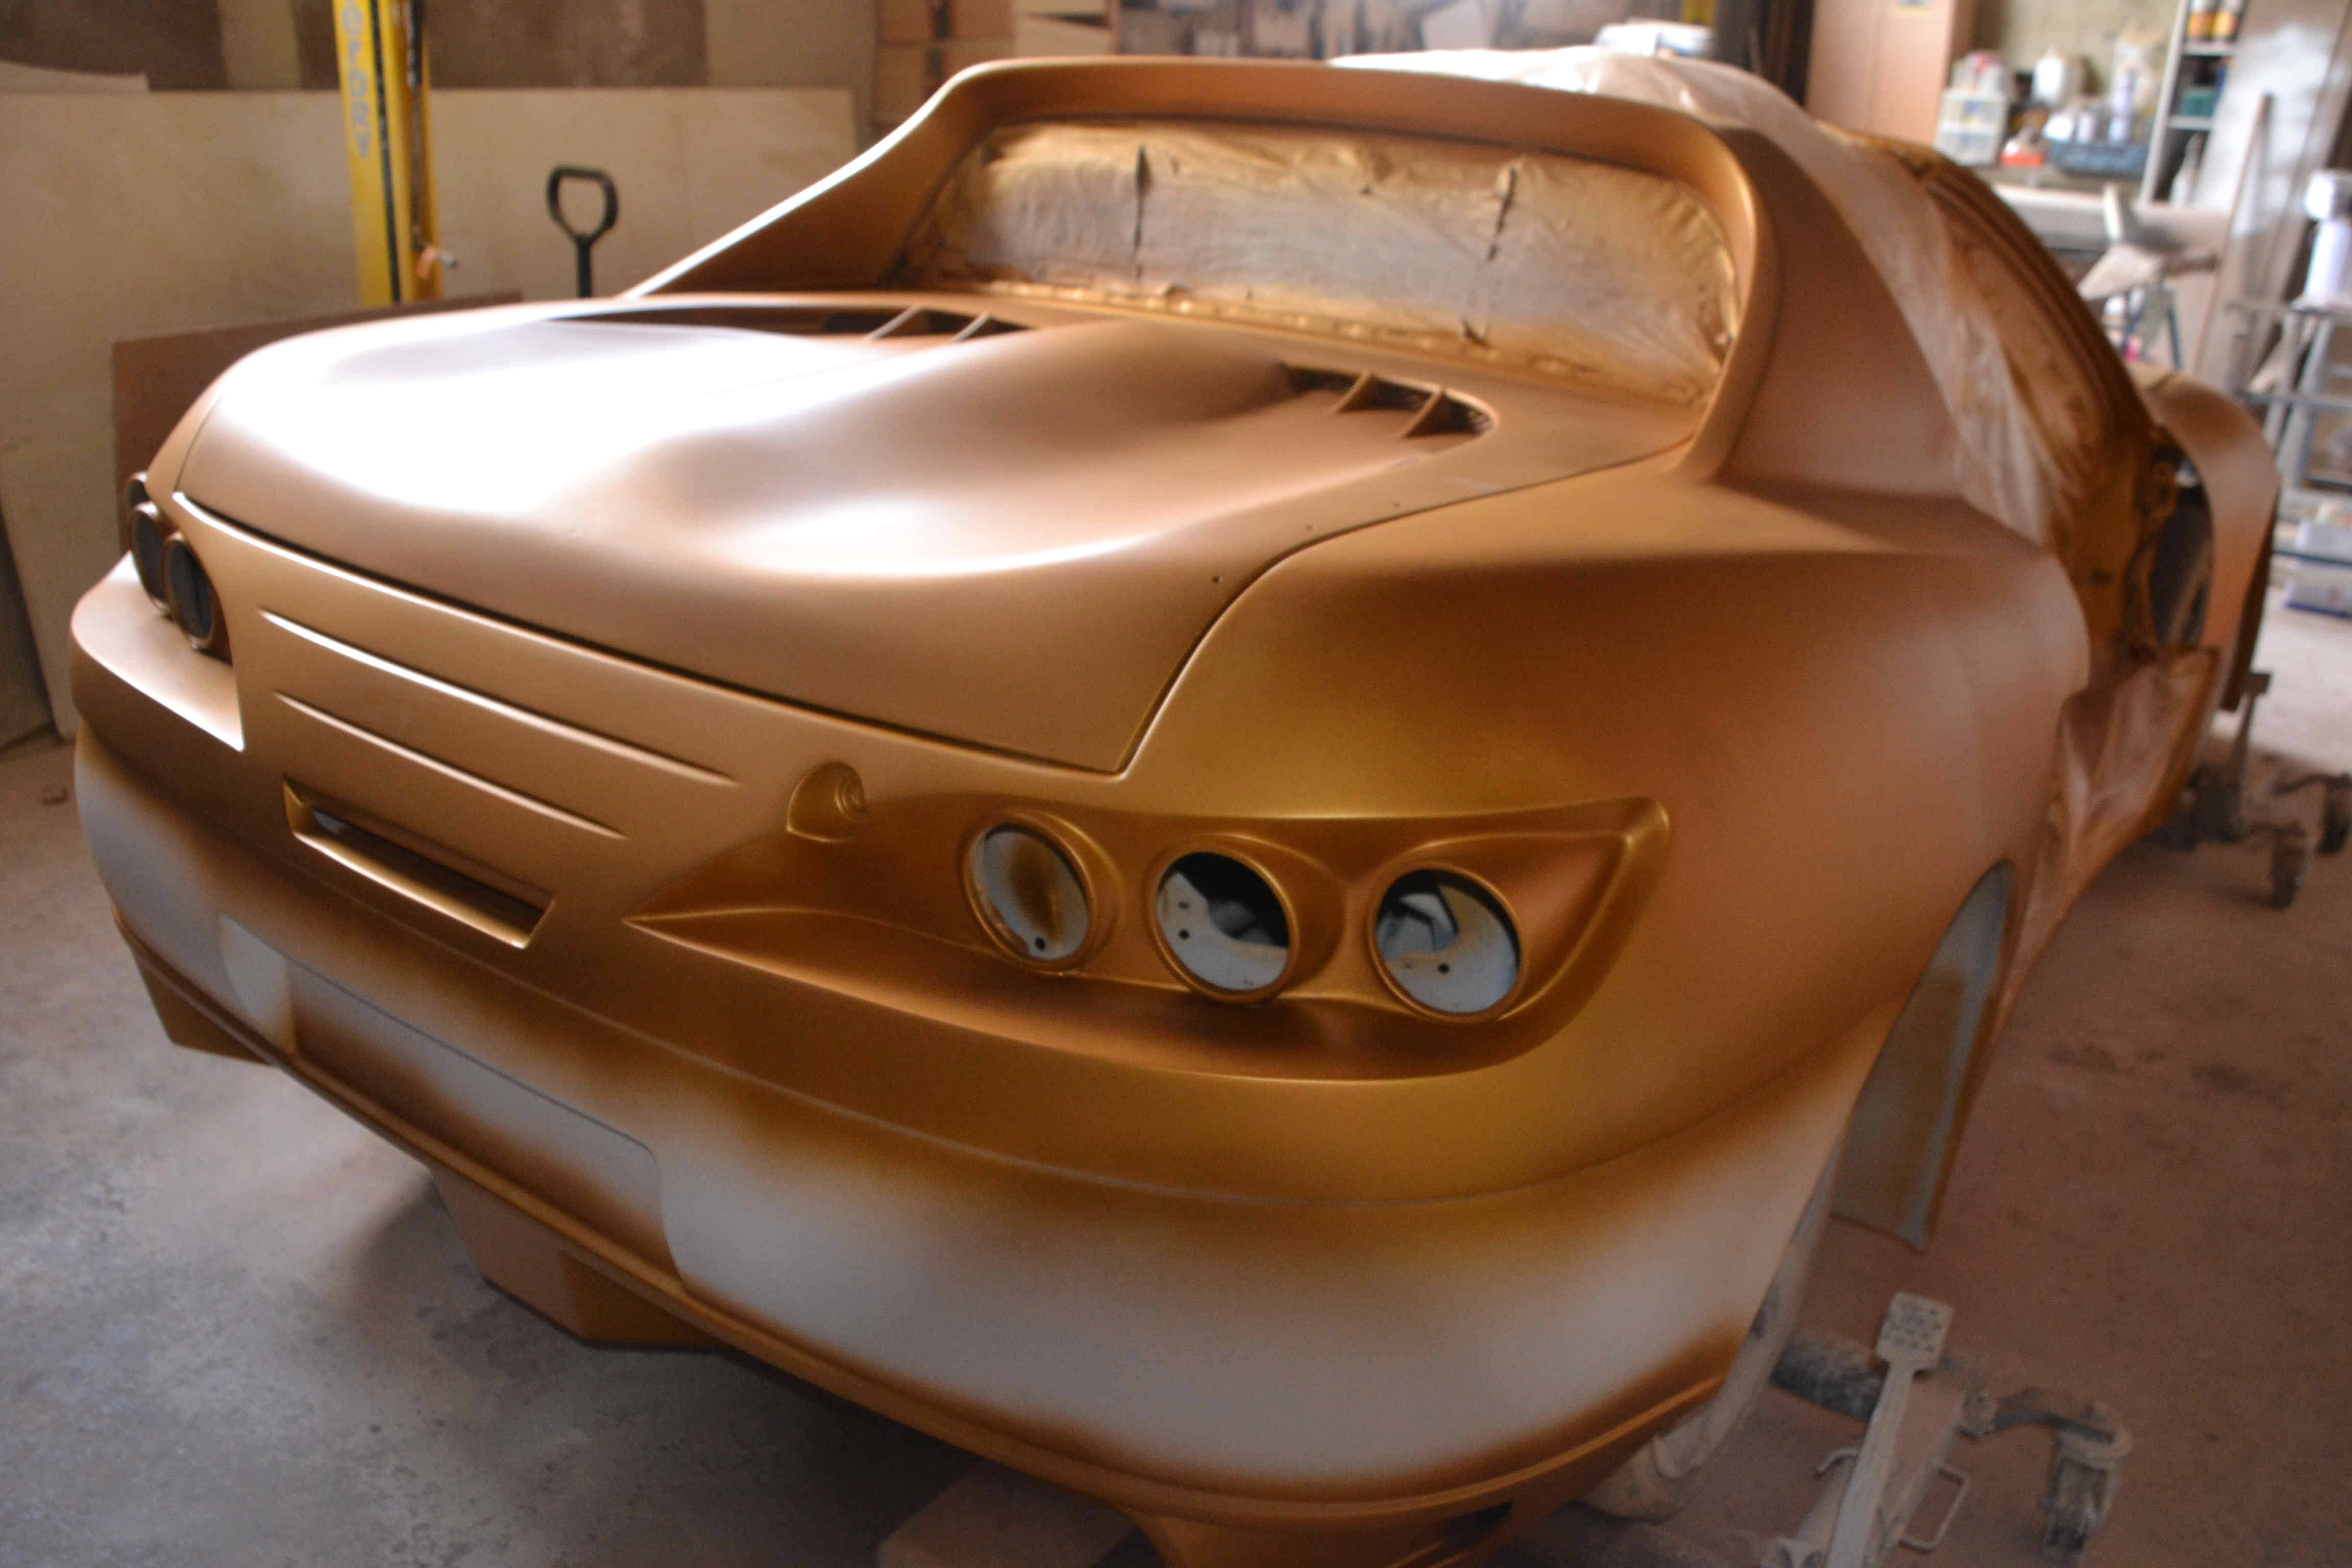 afbeelding van een tuning polyester project waarbij Honda CRX Delsol een nieuwe look krijgt, replica, CRX wide body, CRX kit car,replica op chassis, kitcar CRX, wide body